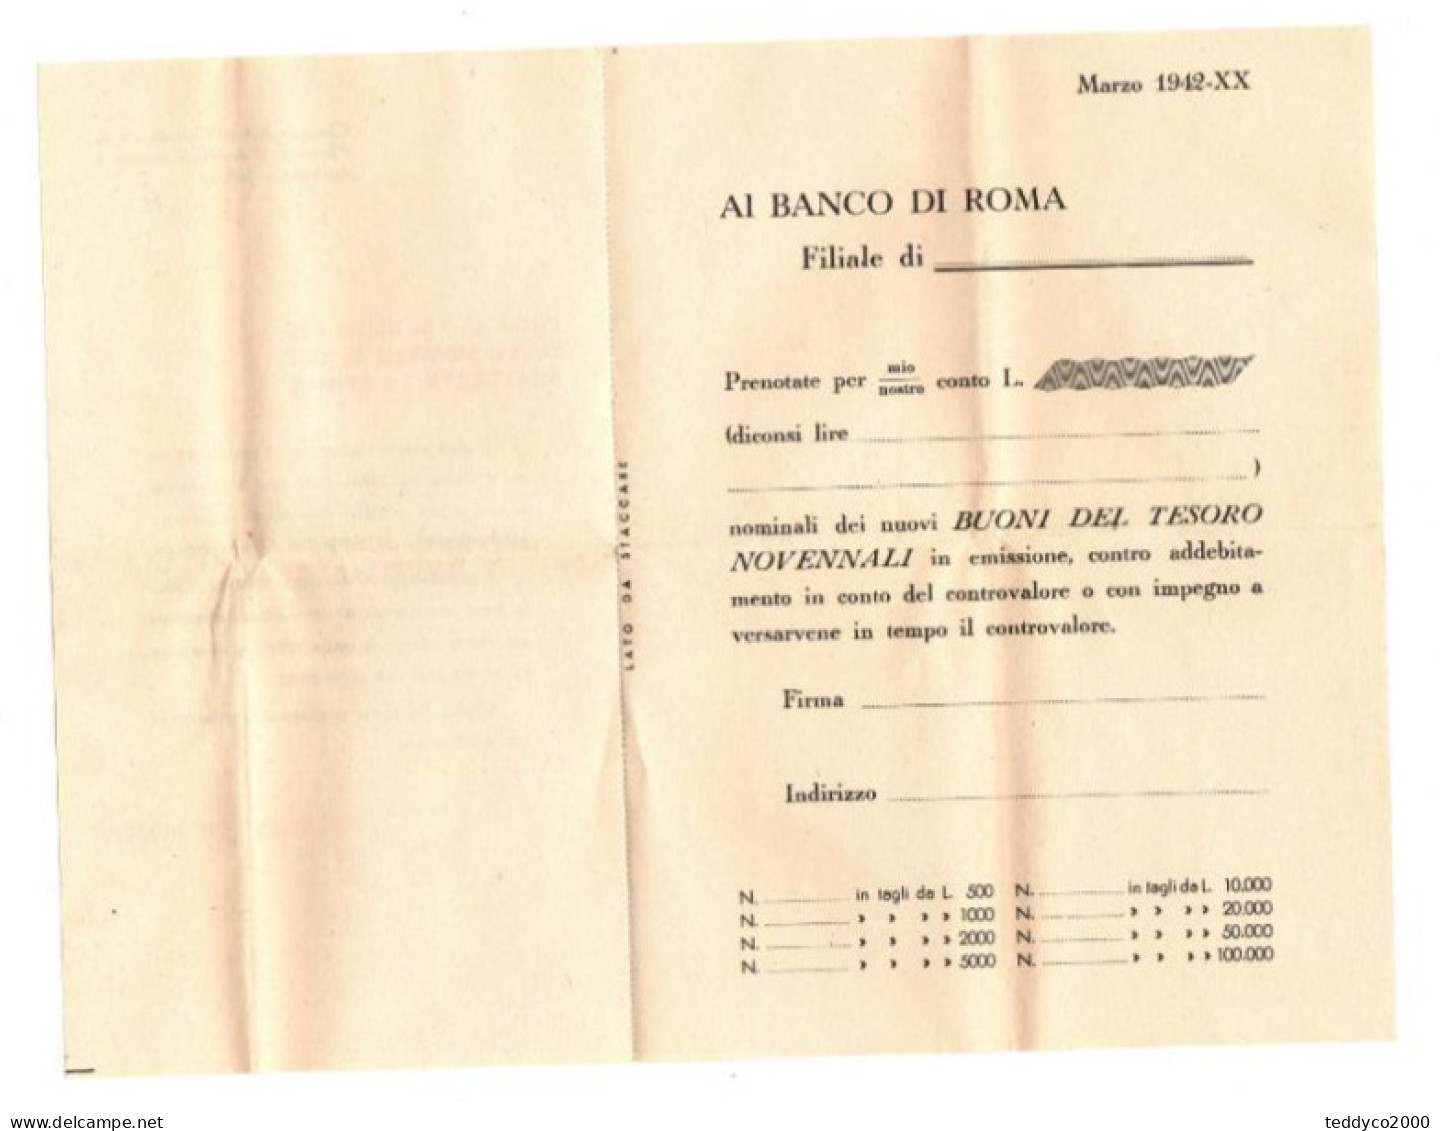 BUONI DEL TESORO 5% 1942-1951 BANCO DI ROMA - A - C